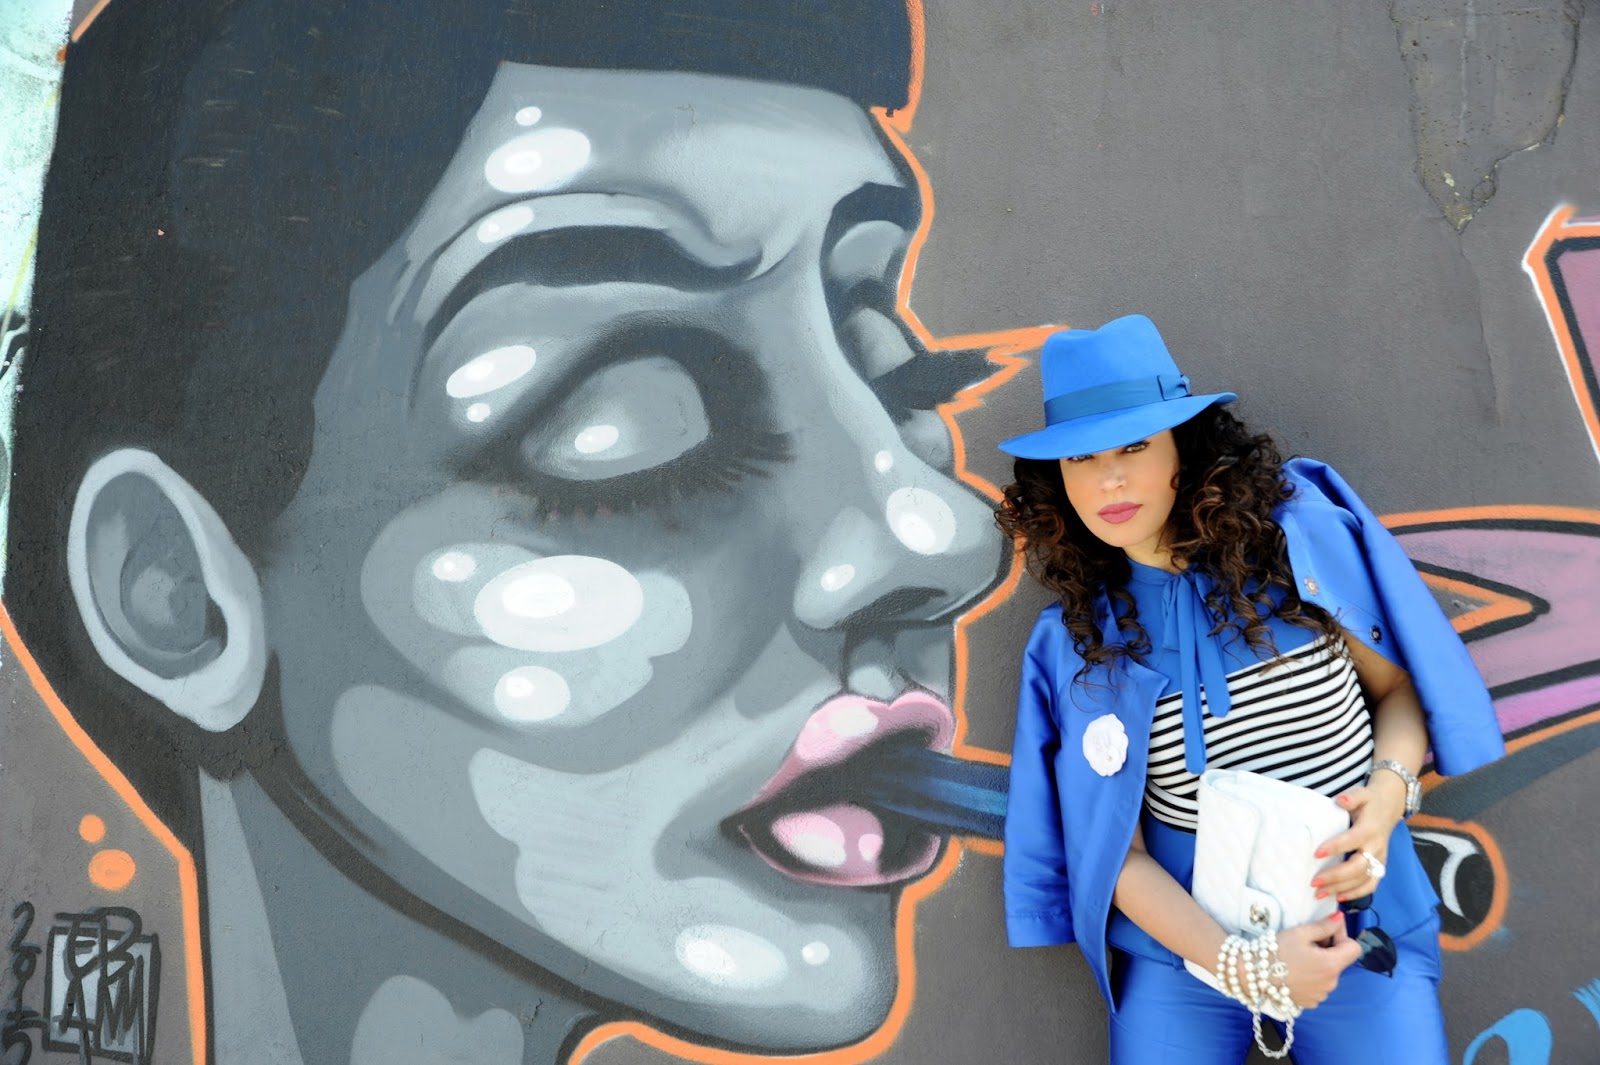 Cobalt Blue & Street Art